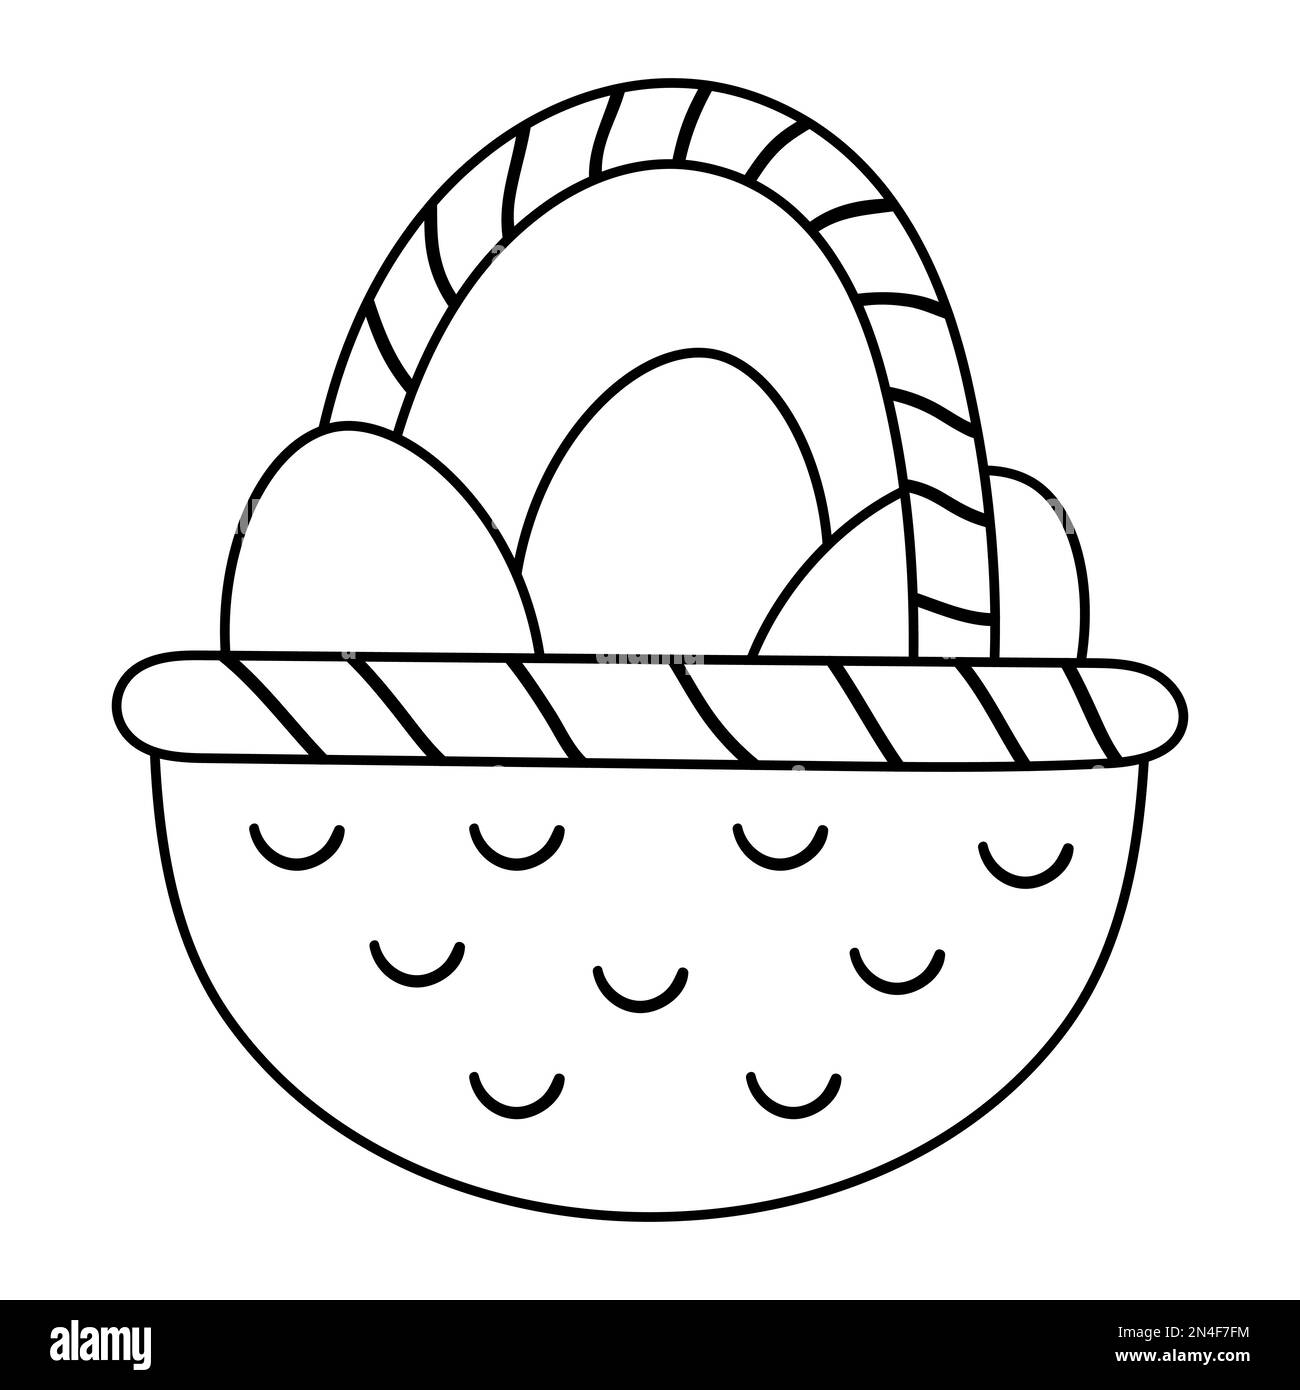 Schwarz-weißer Vektorkorb mit Eiersymbol. Osterumriss traditionelles Symbol und Designelement isoliert auf weißem Hintergrund. Süße Frühlingsillustrierung Stock Vektor